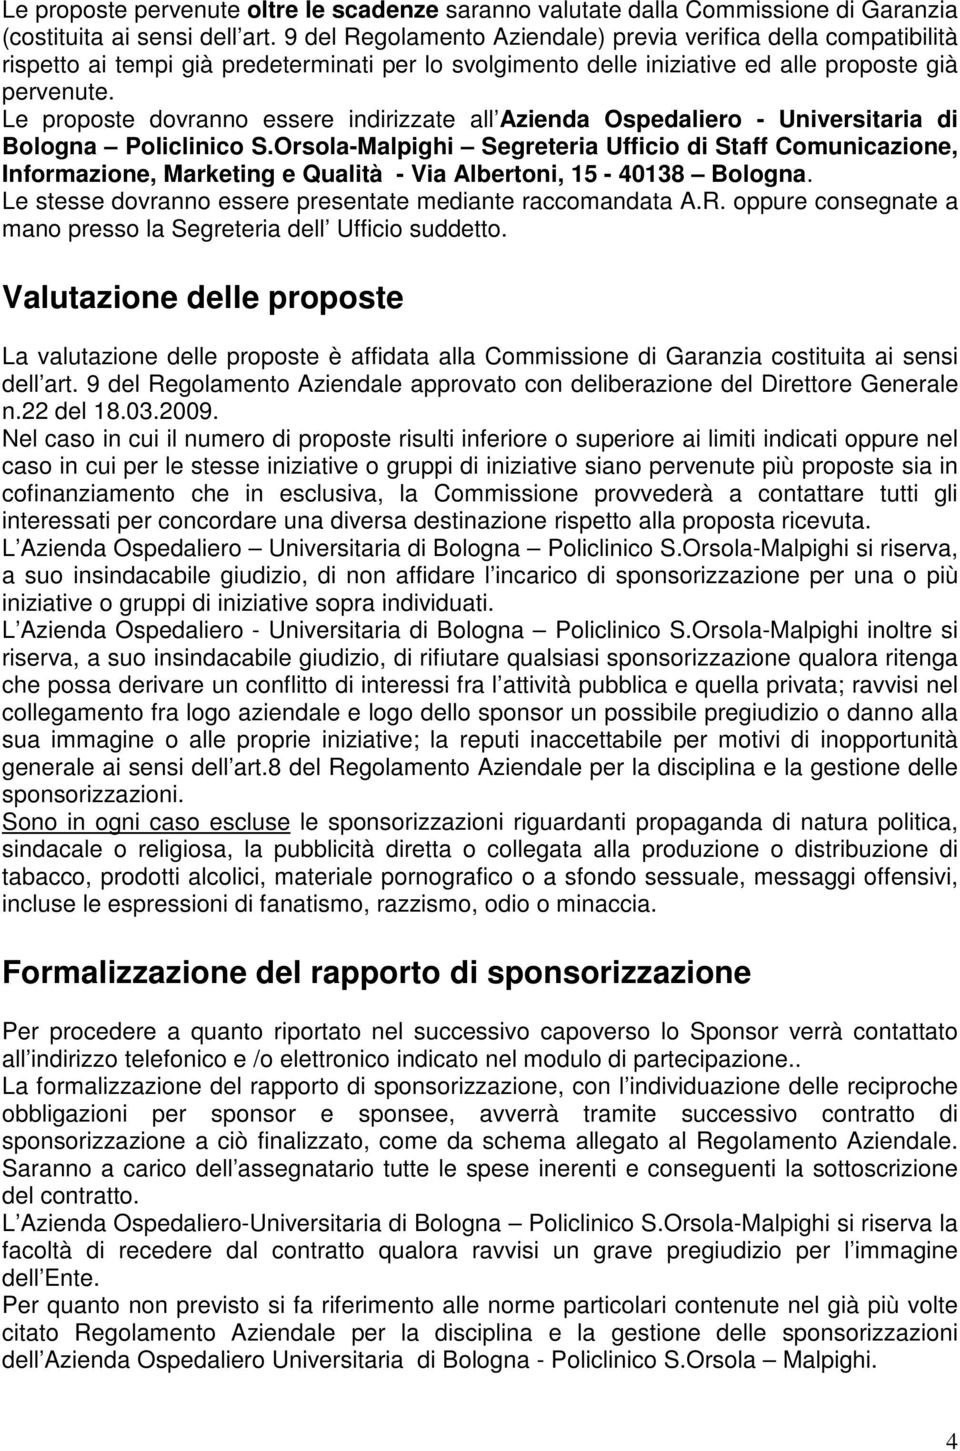 Le proposte dovranno essere indirizzate all Azienda Ospedaliero - Universitaria di Bologna Policlinico S.